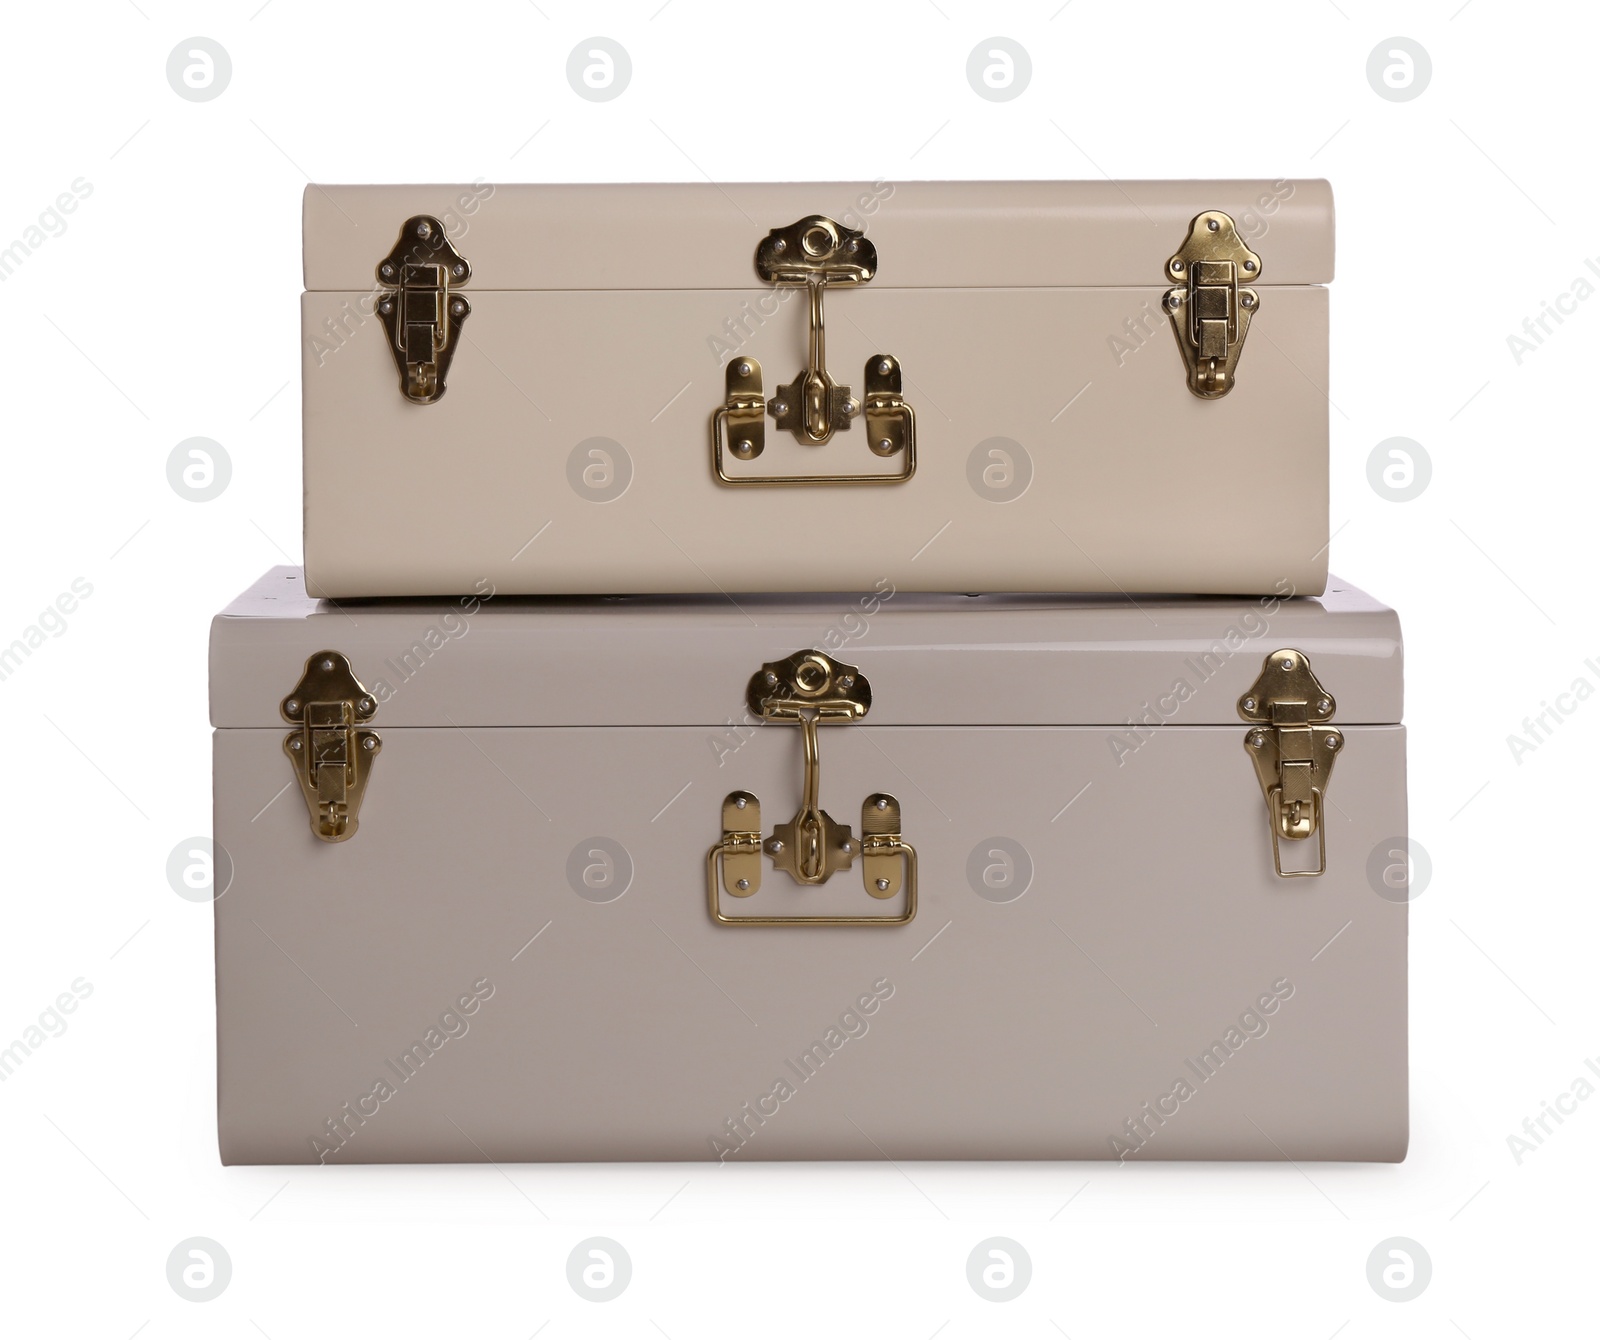 Photo of Two stylish storage trunks isolated on white